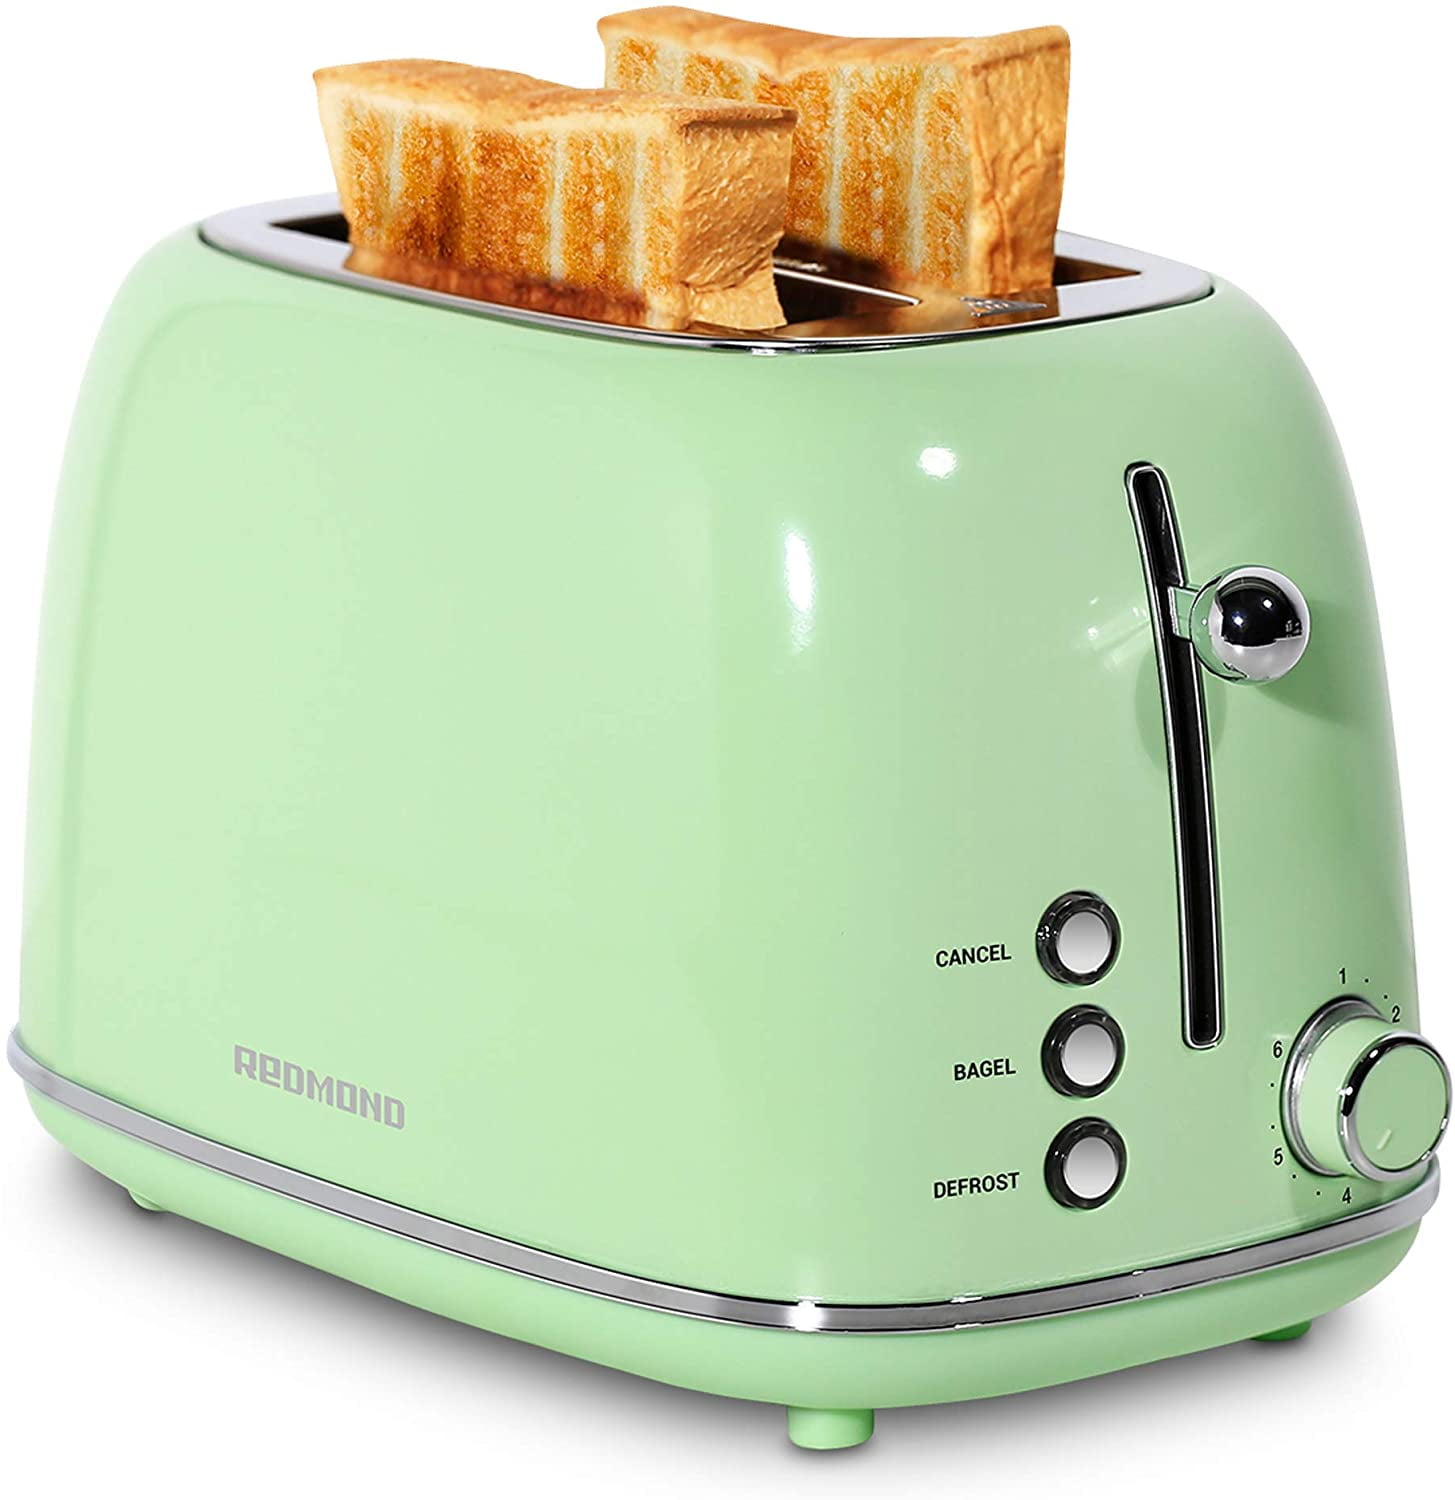 REDMOND 2 Slice Toaster Retro Stainless Steel Toaster, Mint Green ...